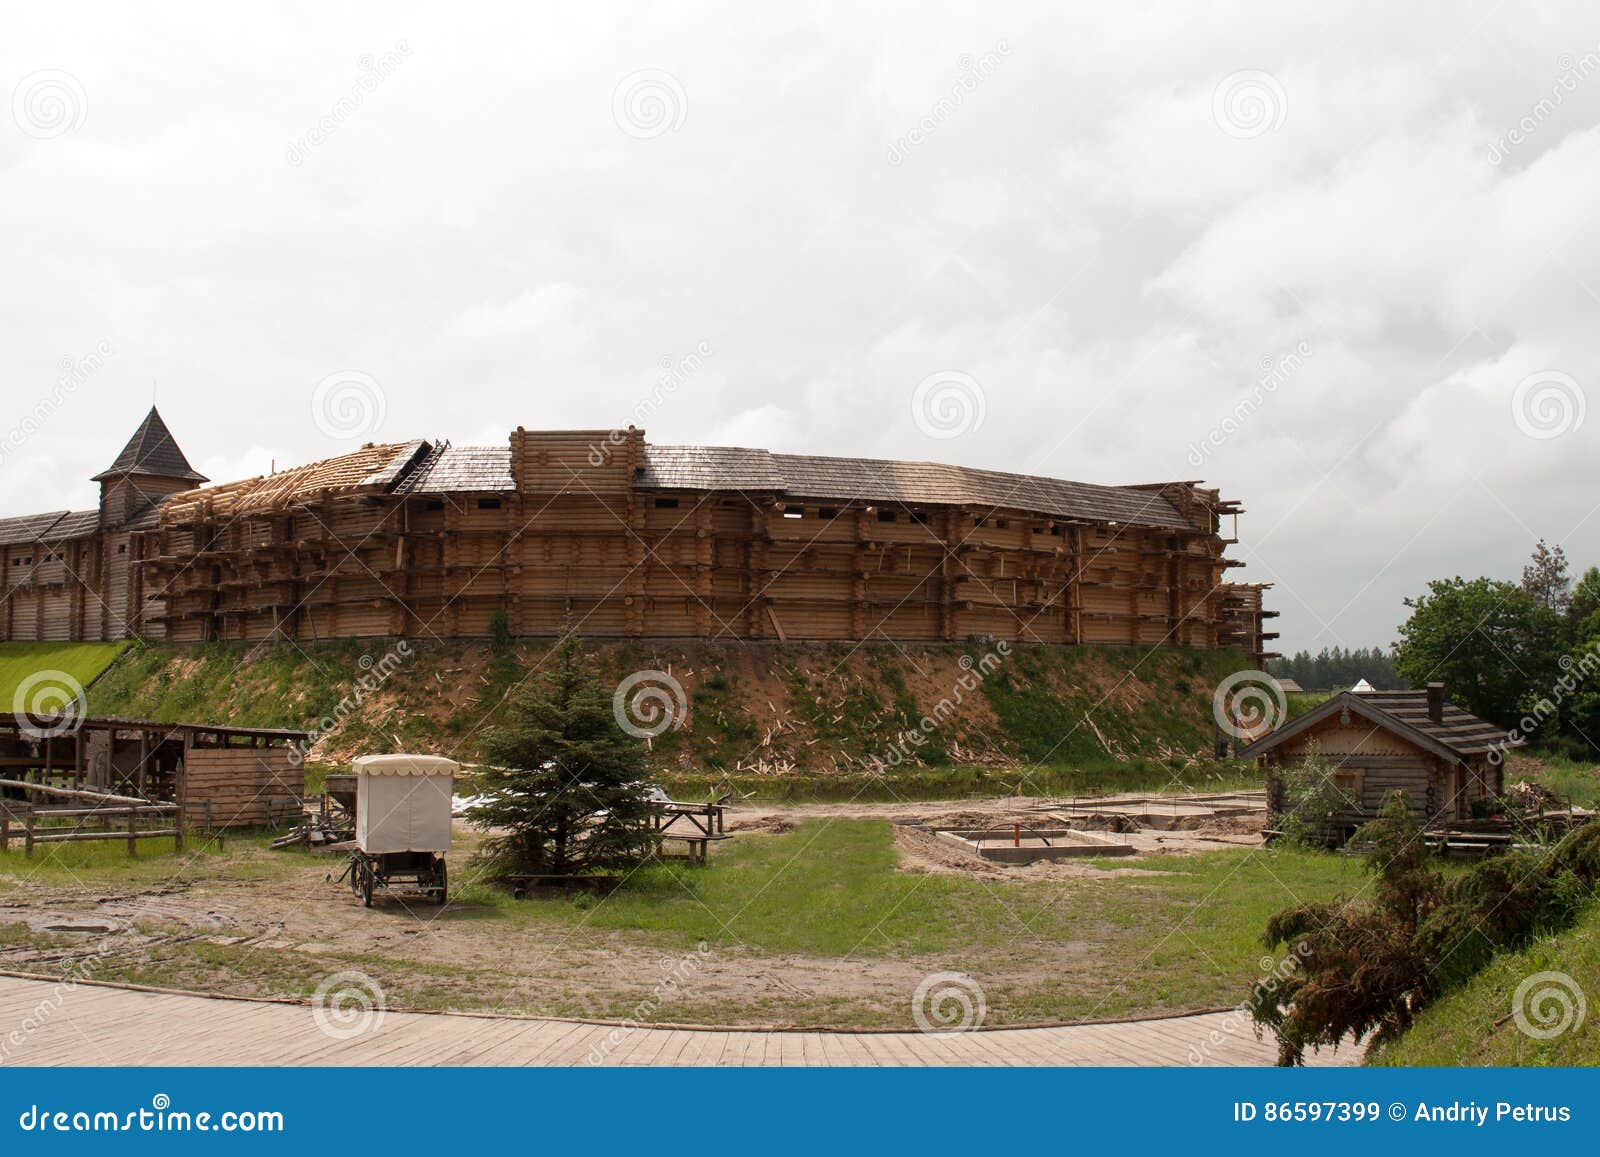 Славянский кремль. Деревянная крепость с частоколом и мельницей в подмосковном поле